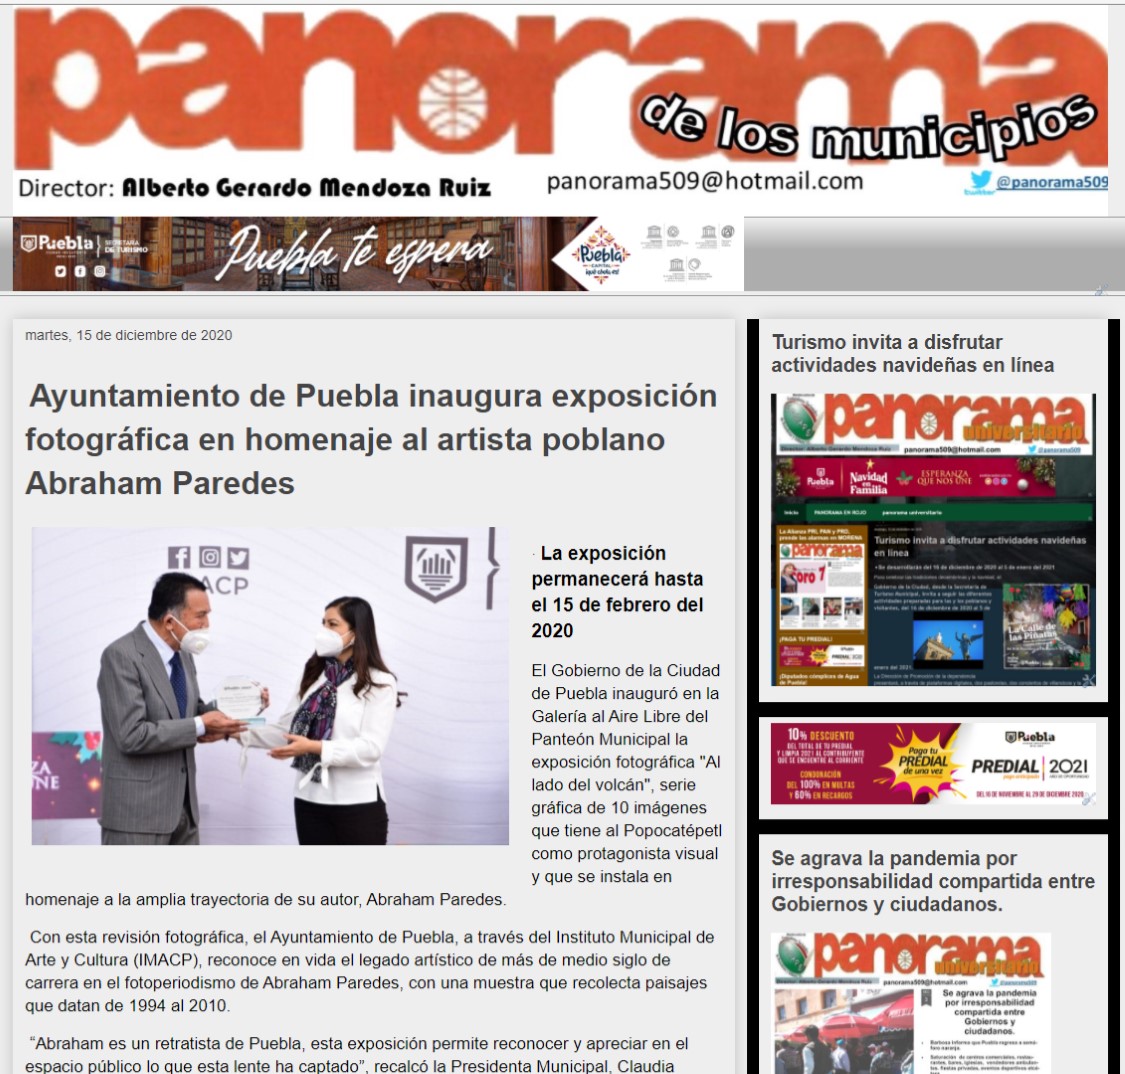 Ayuntamiento de Puebla inaugura exposición fotográfica en homenaje al artista poblano Abraham Pared